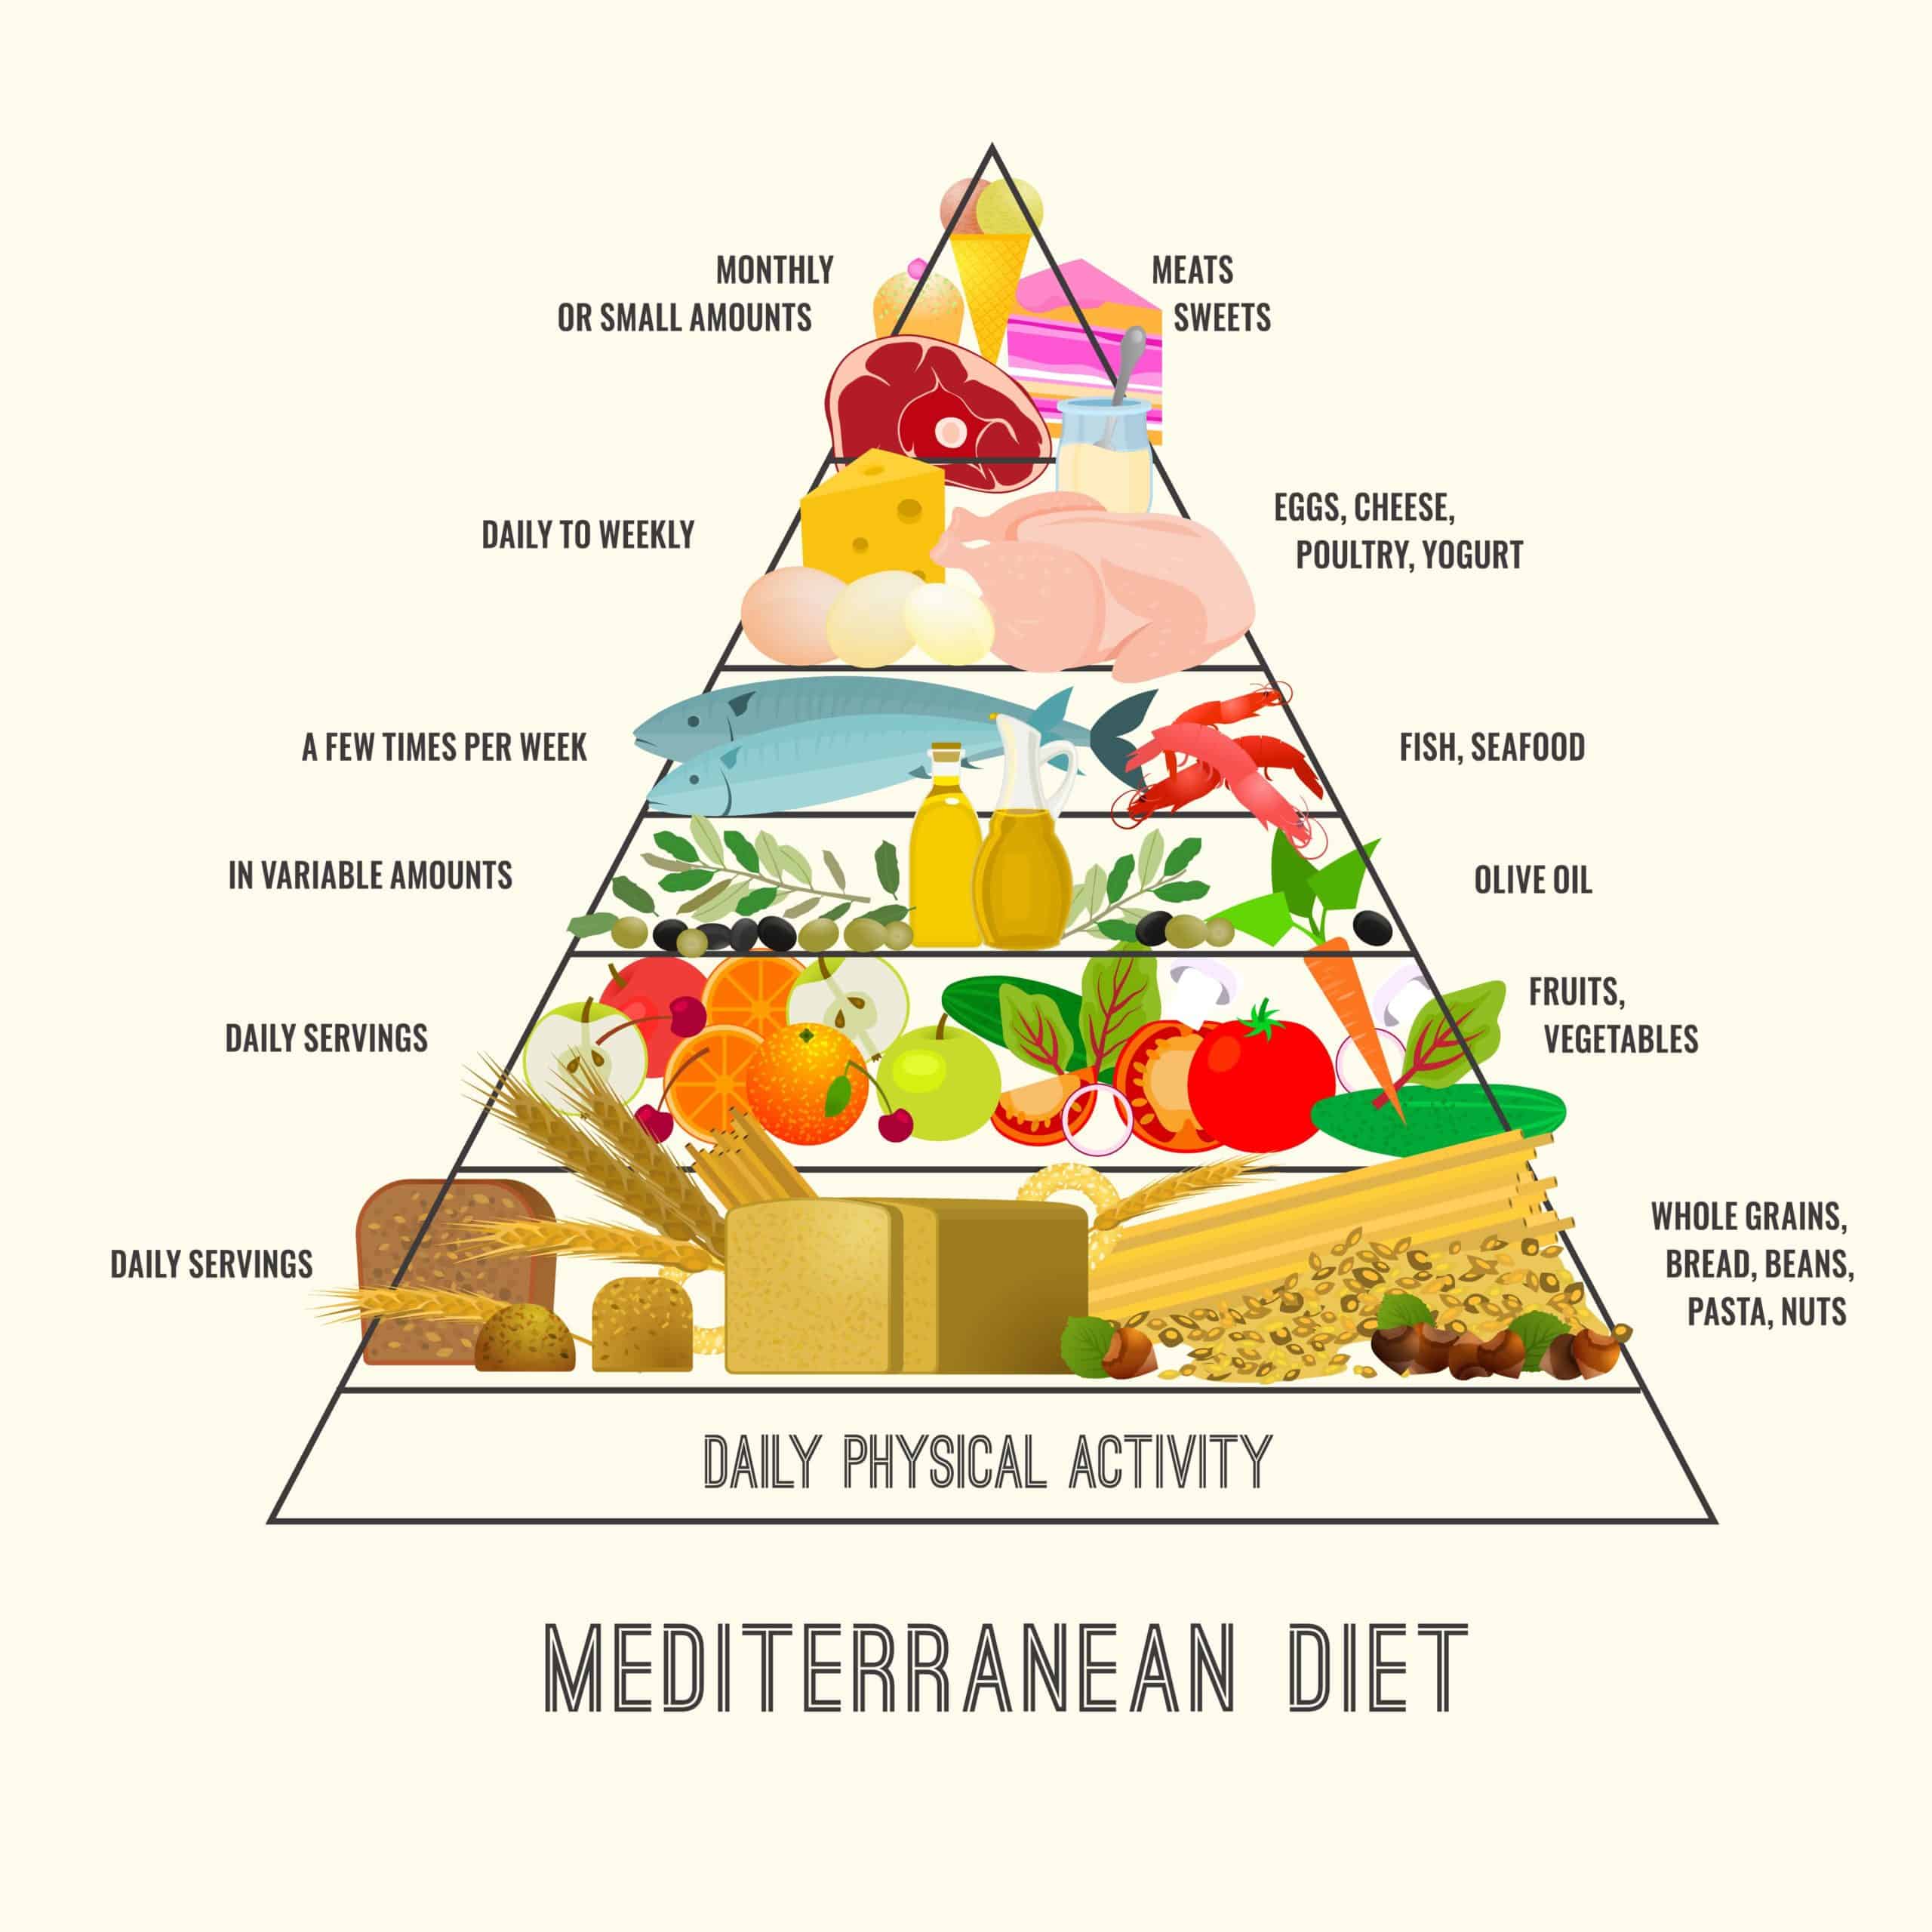 Original Mediterranean Diet